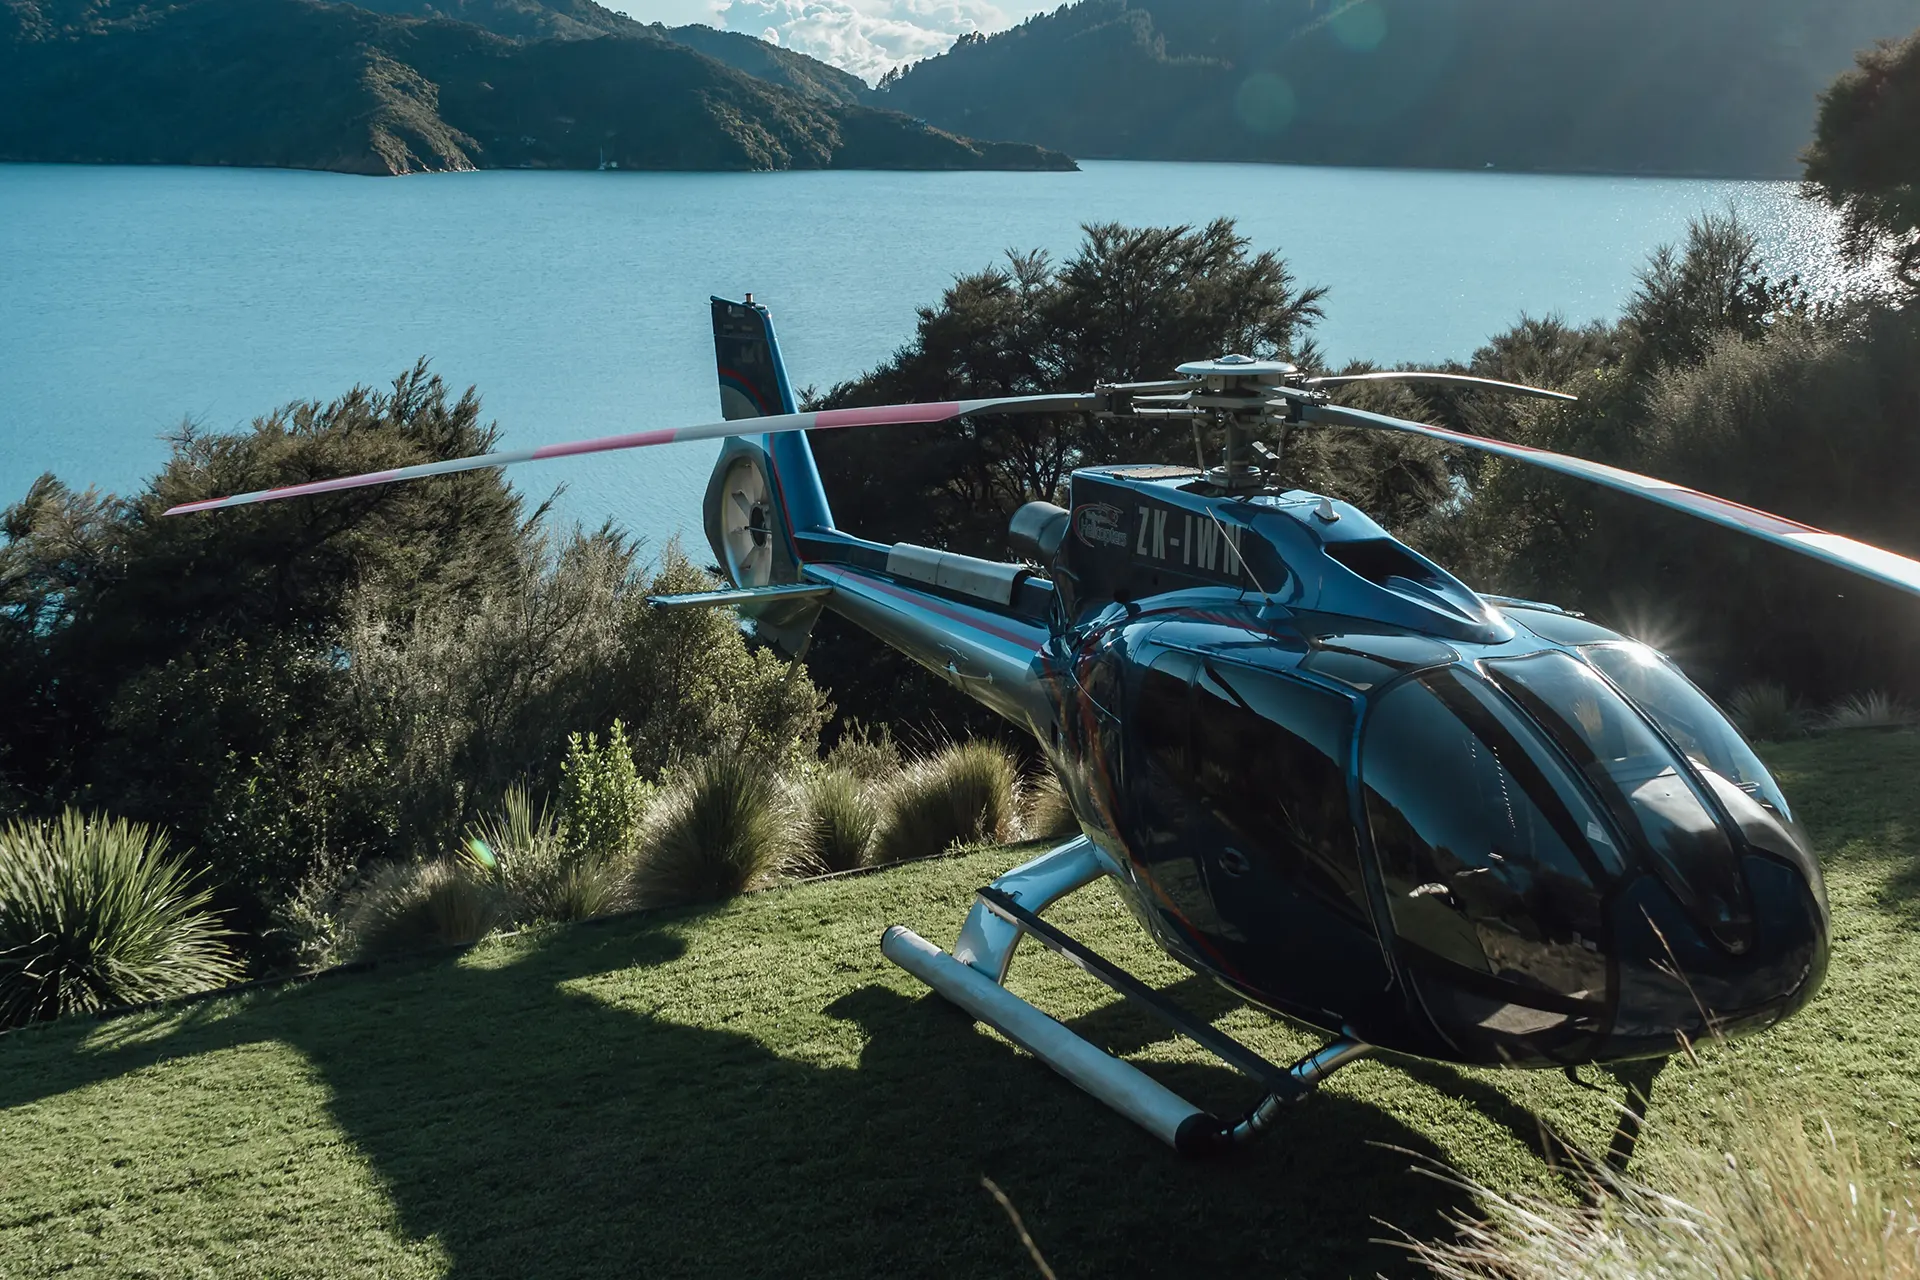 Helikopter auf bewachsenem Landeplatz